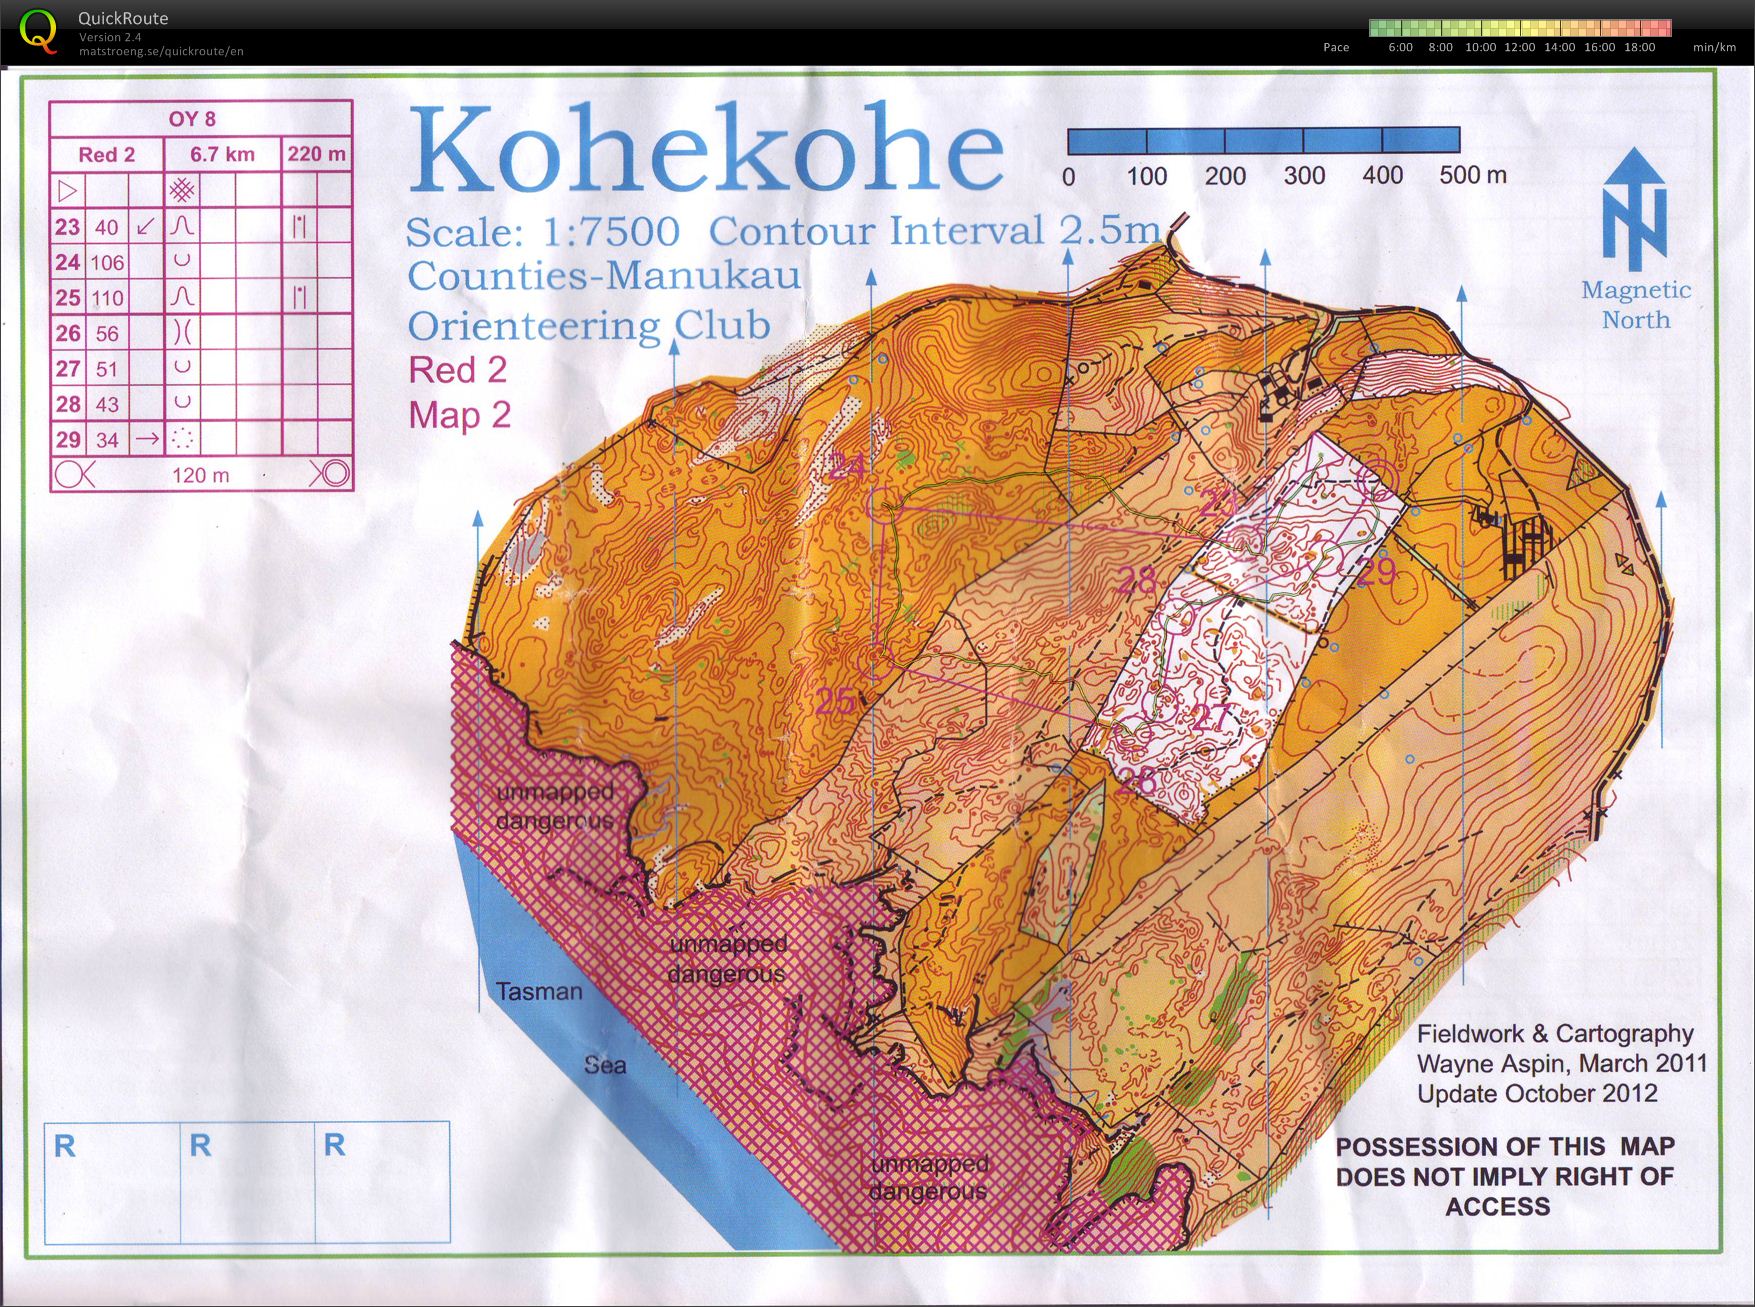 OY8 Kohekohe (part 2) (27-10-2012)